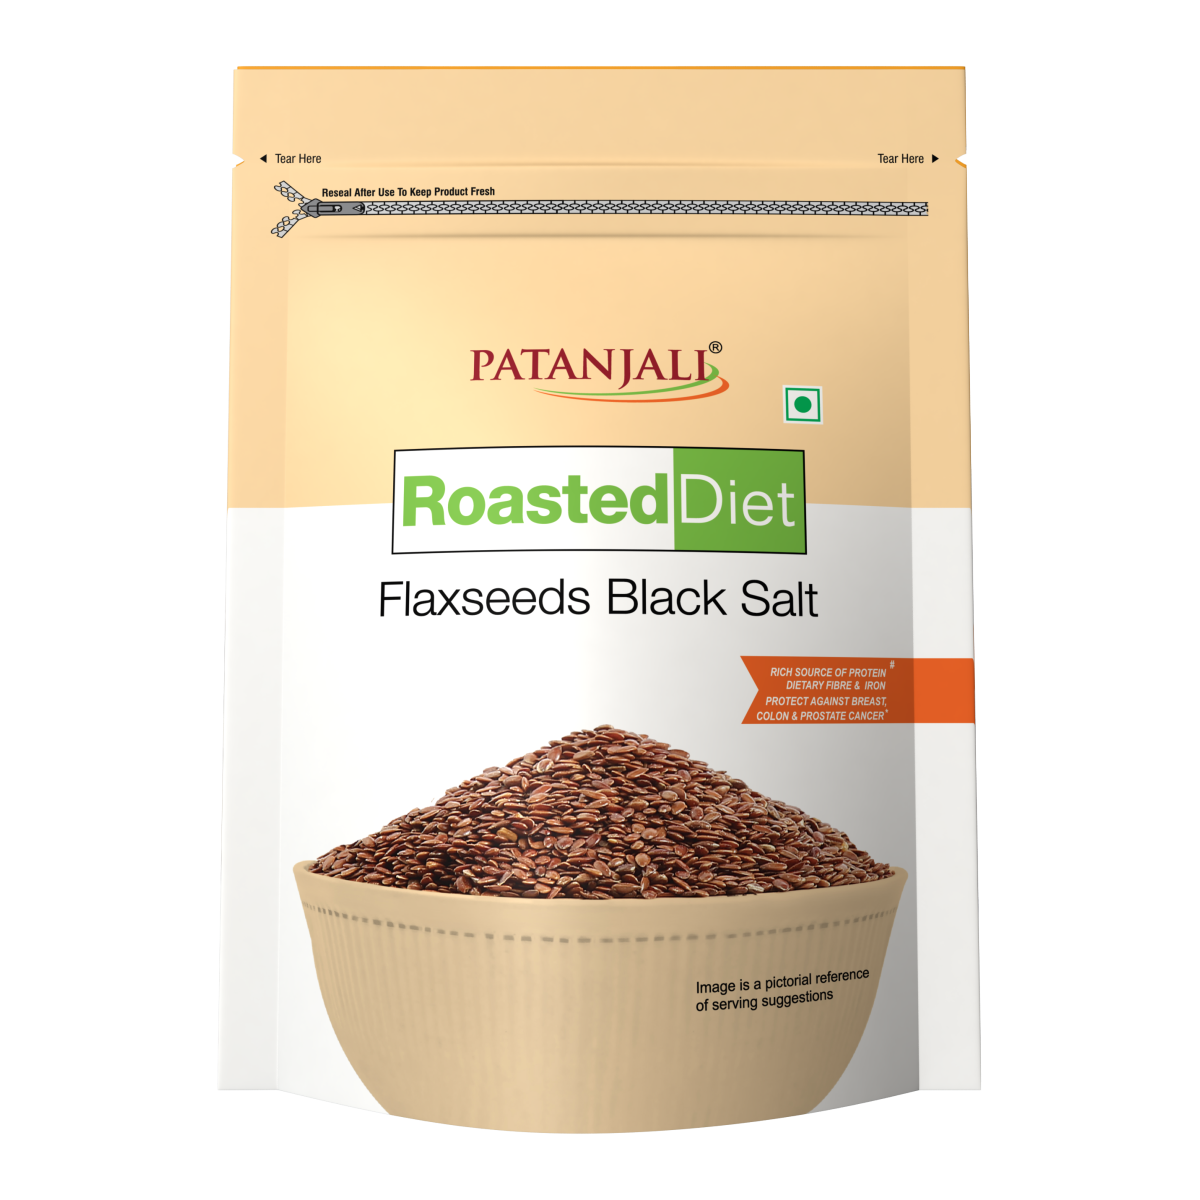 Roasted Diet- Flaxseed Black Salt